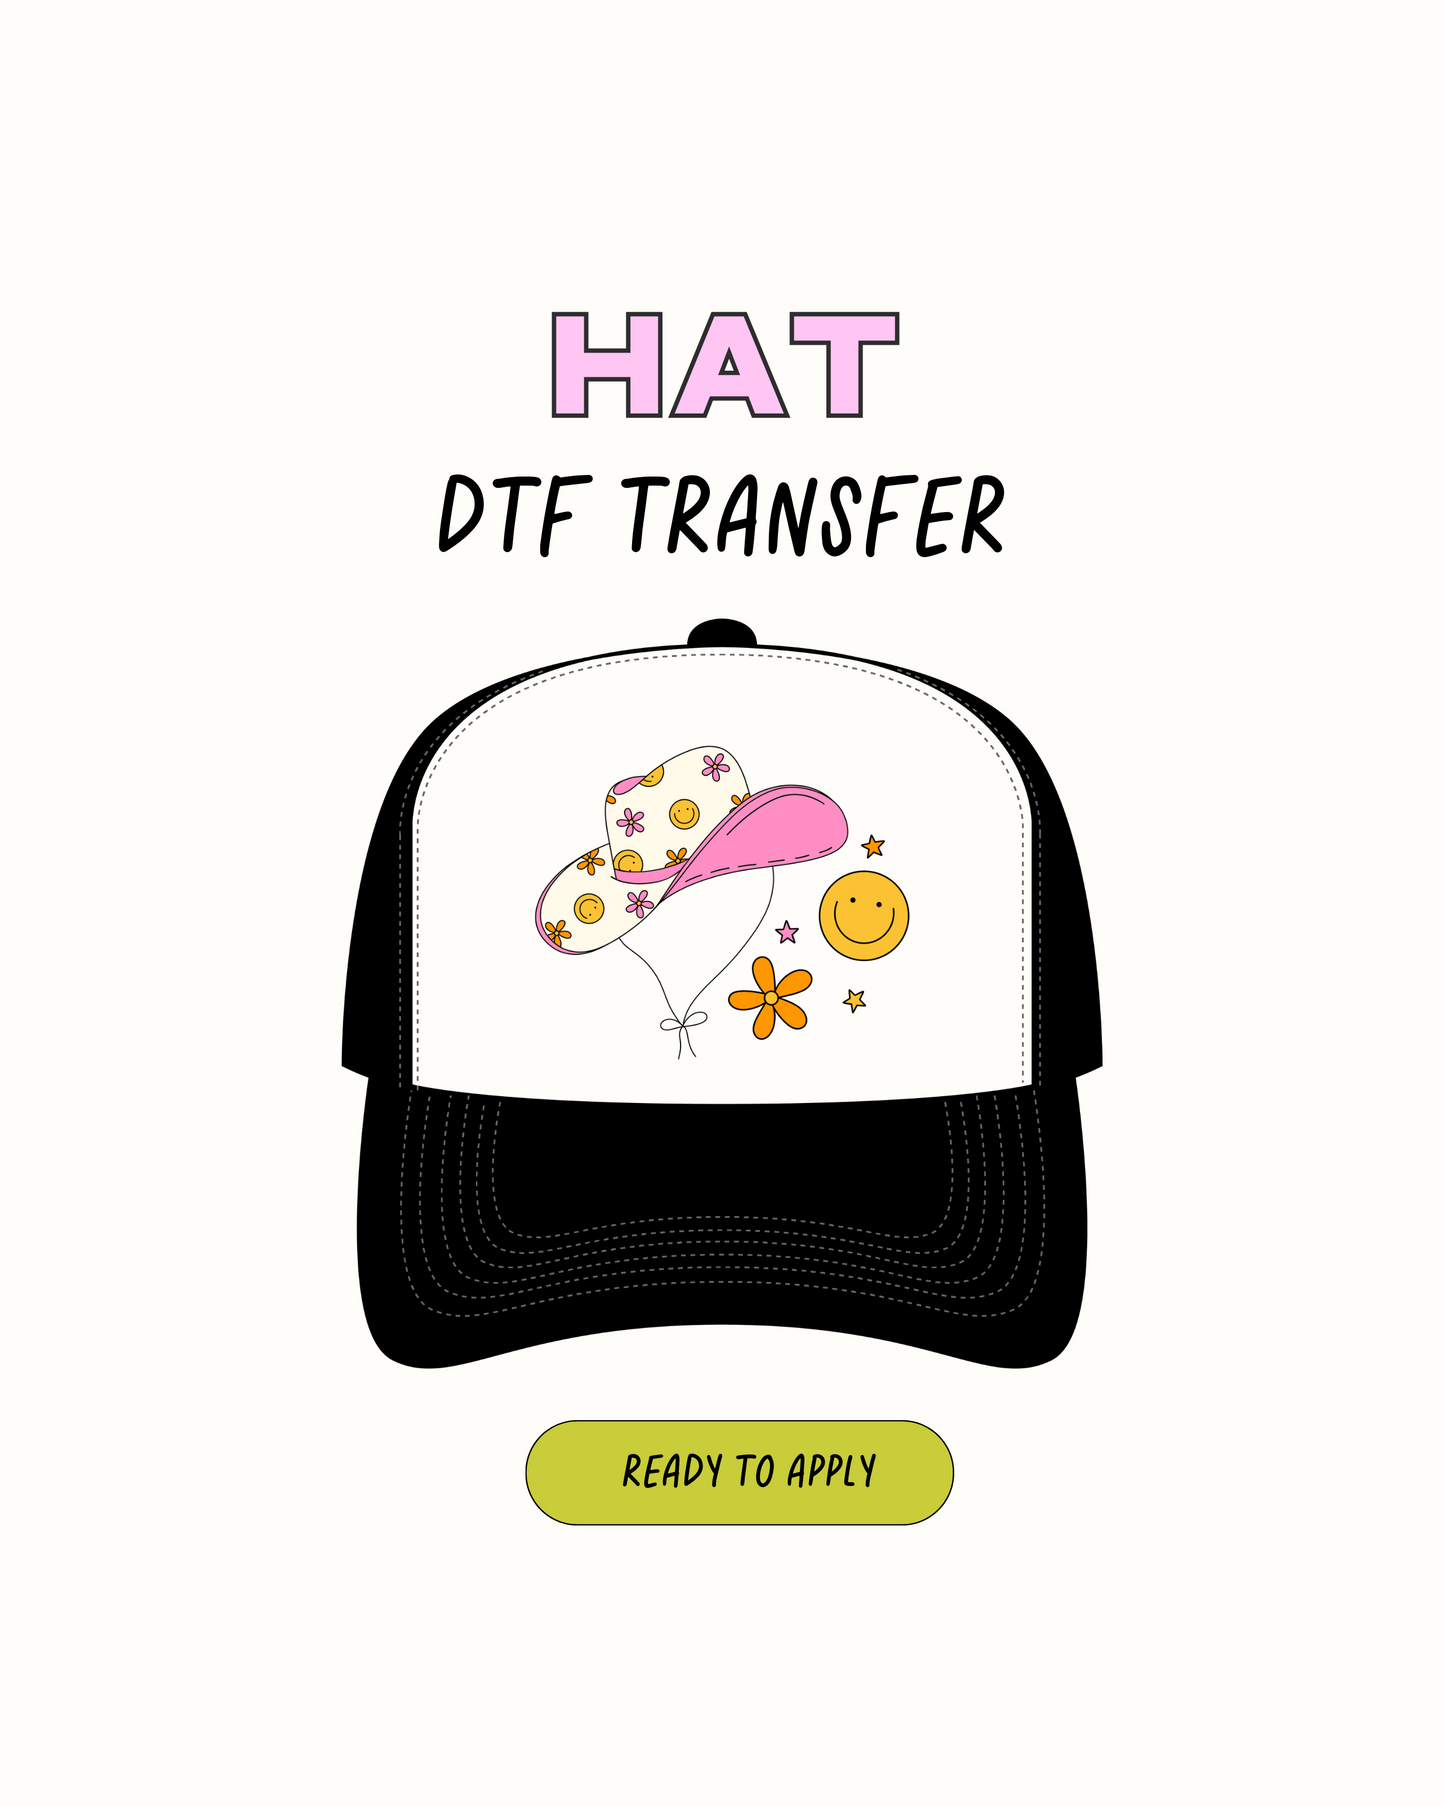 Chica vaquera - Transferencias de sombrero DTF 